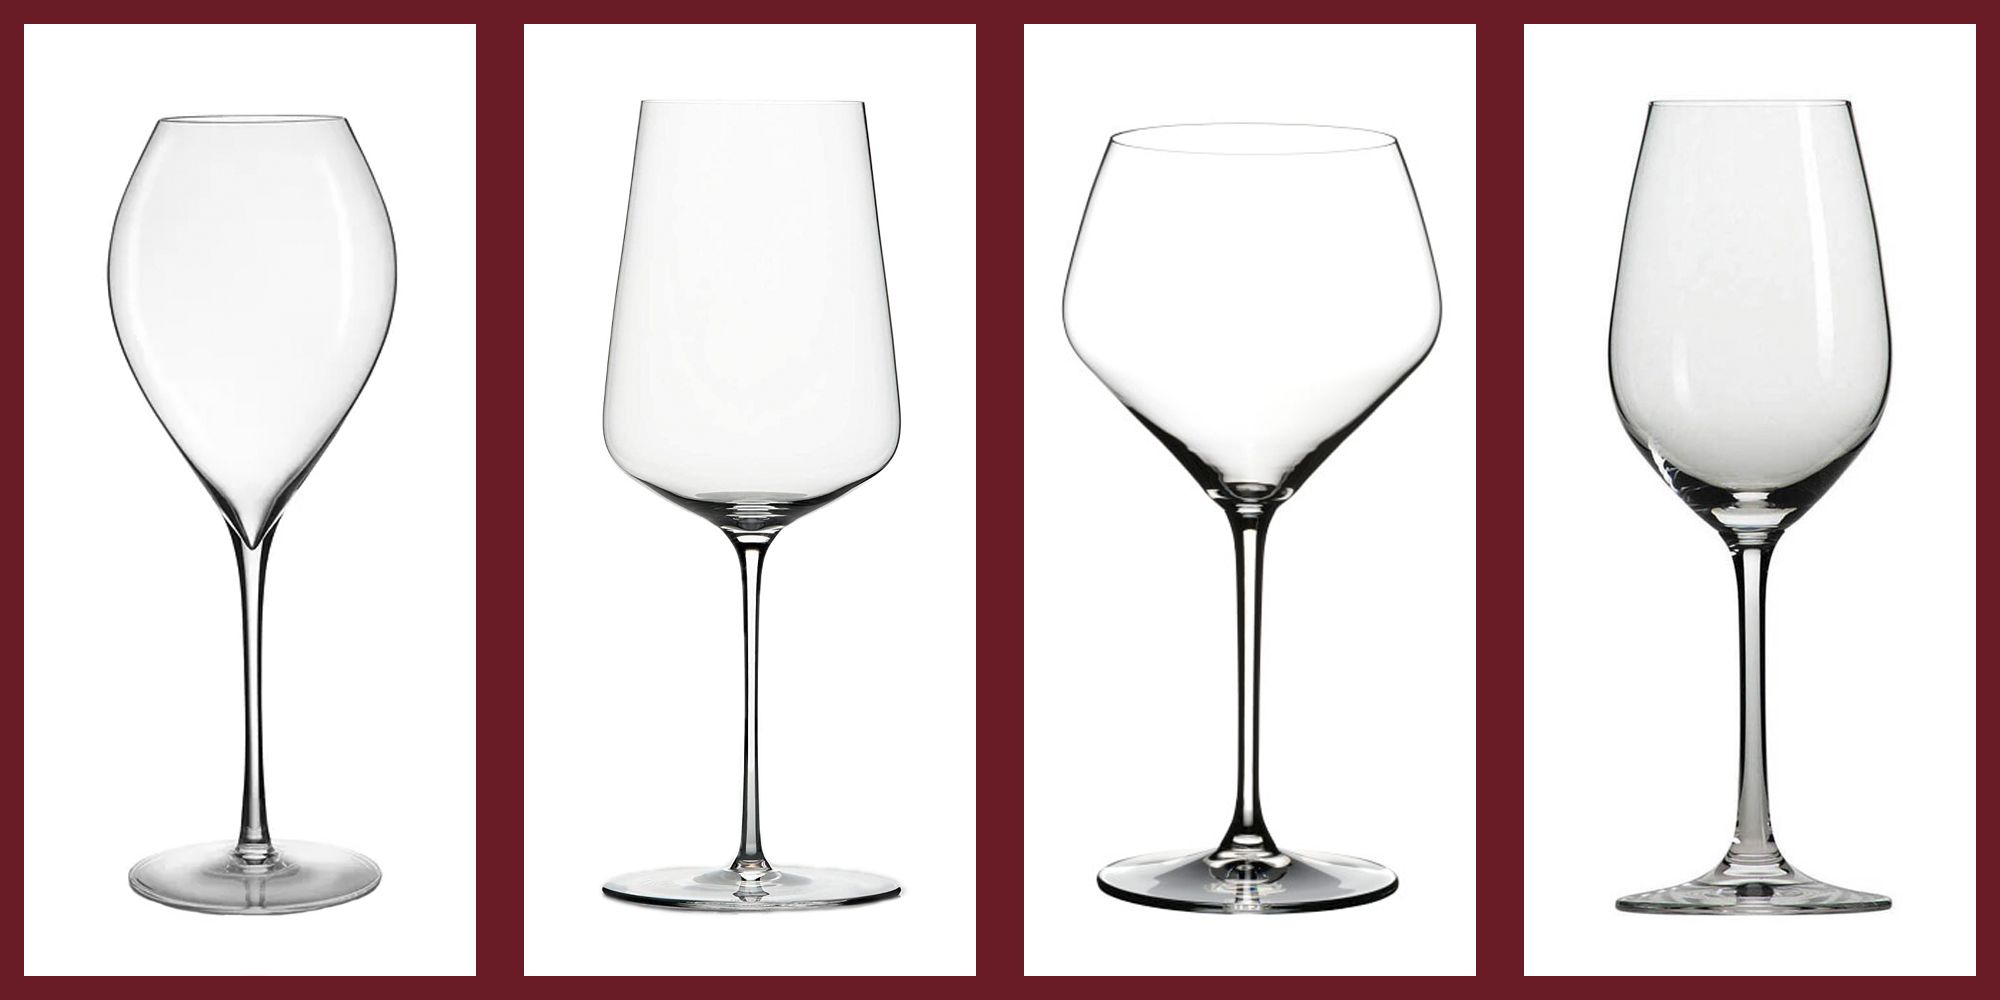 https://hips.hearstapps.com/hmg-prod/images/tc-wineglasses-1607027714.jpg